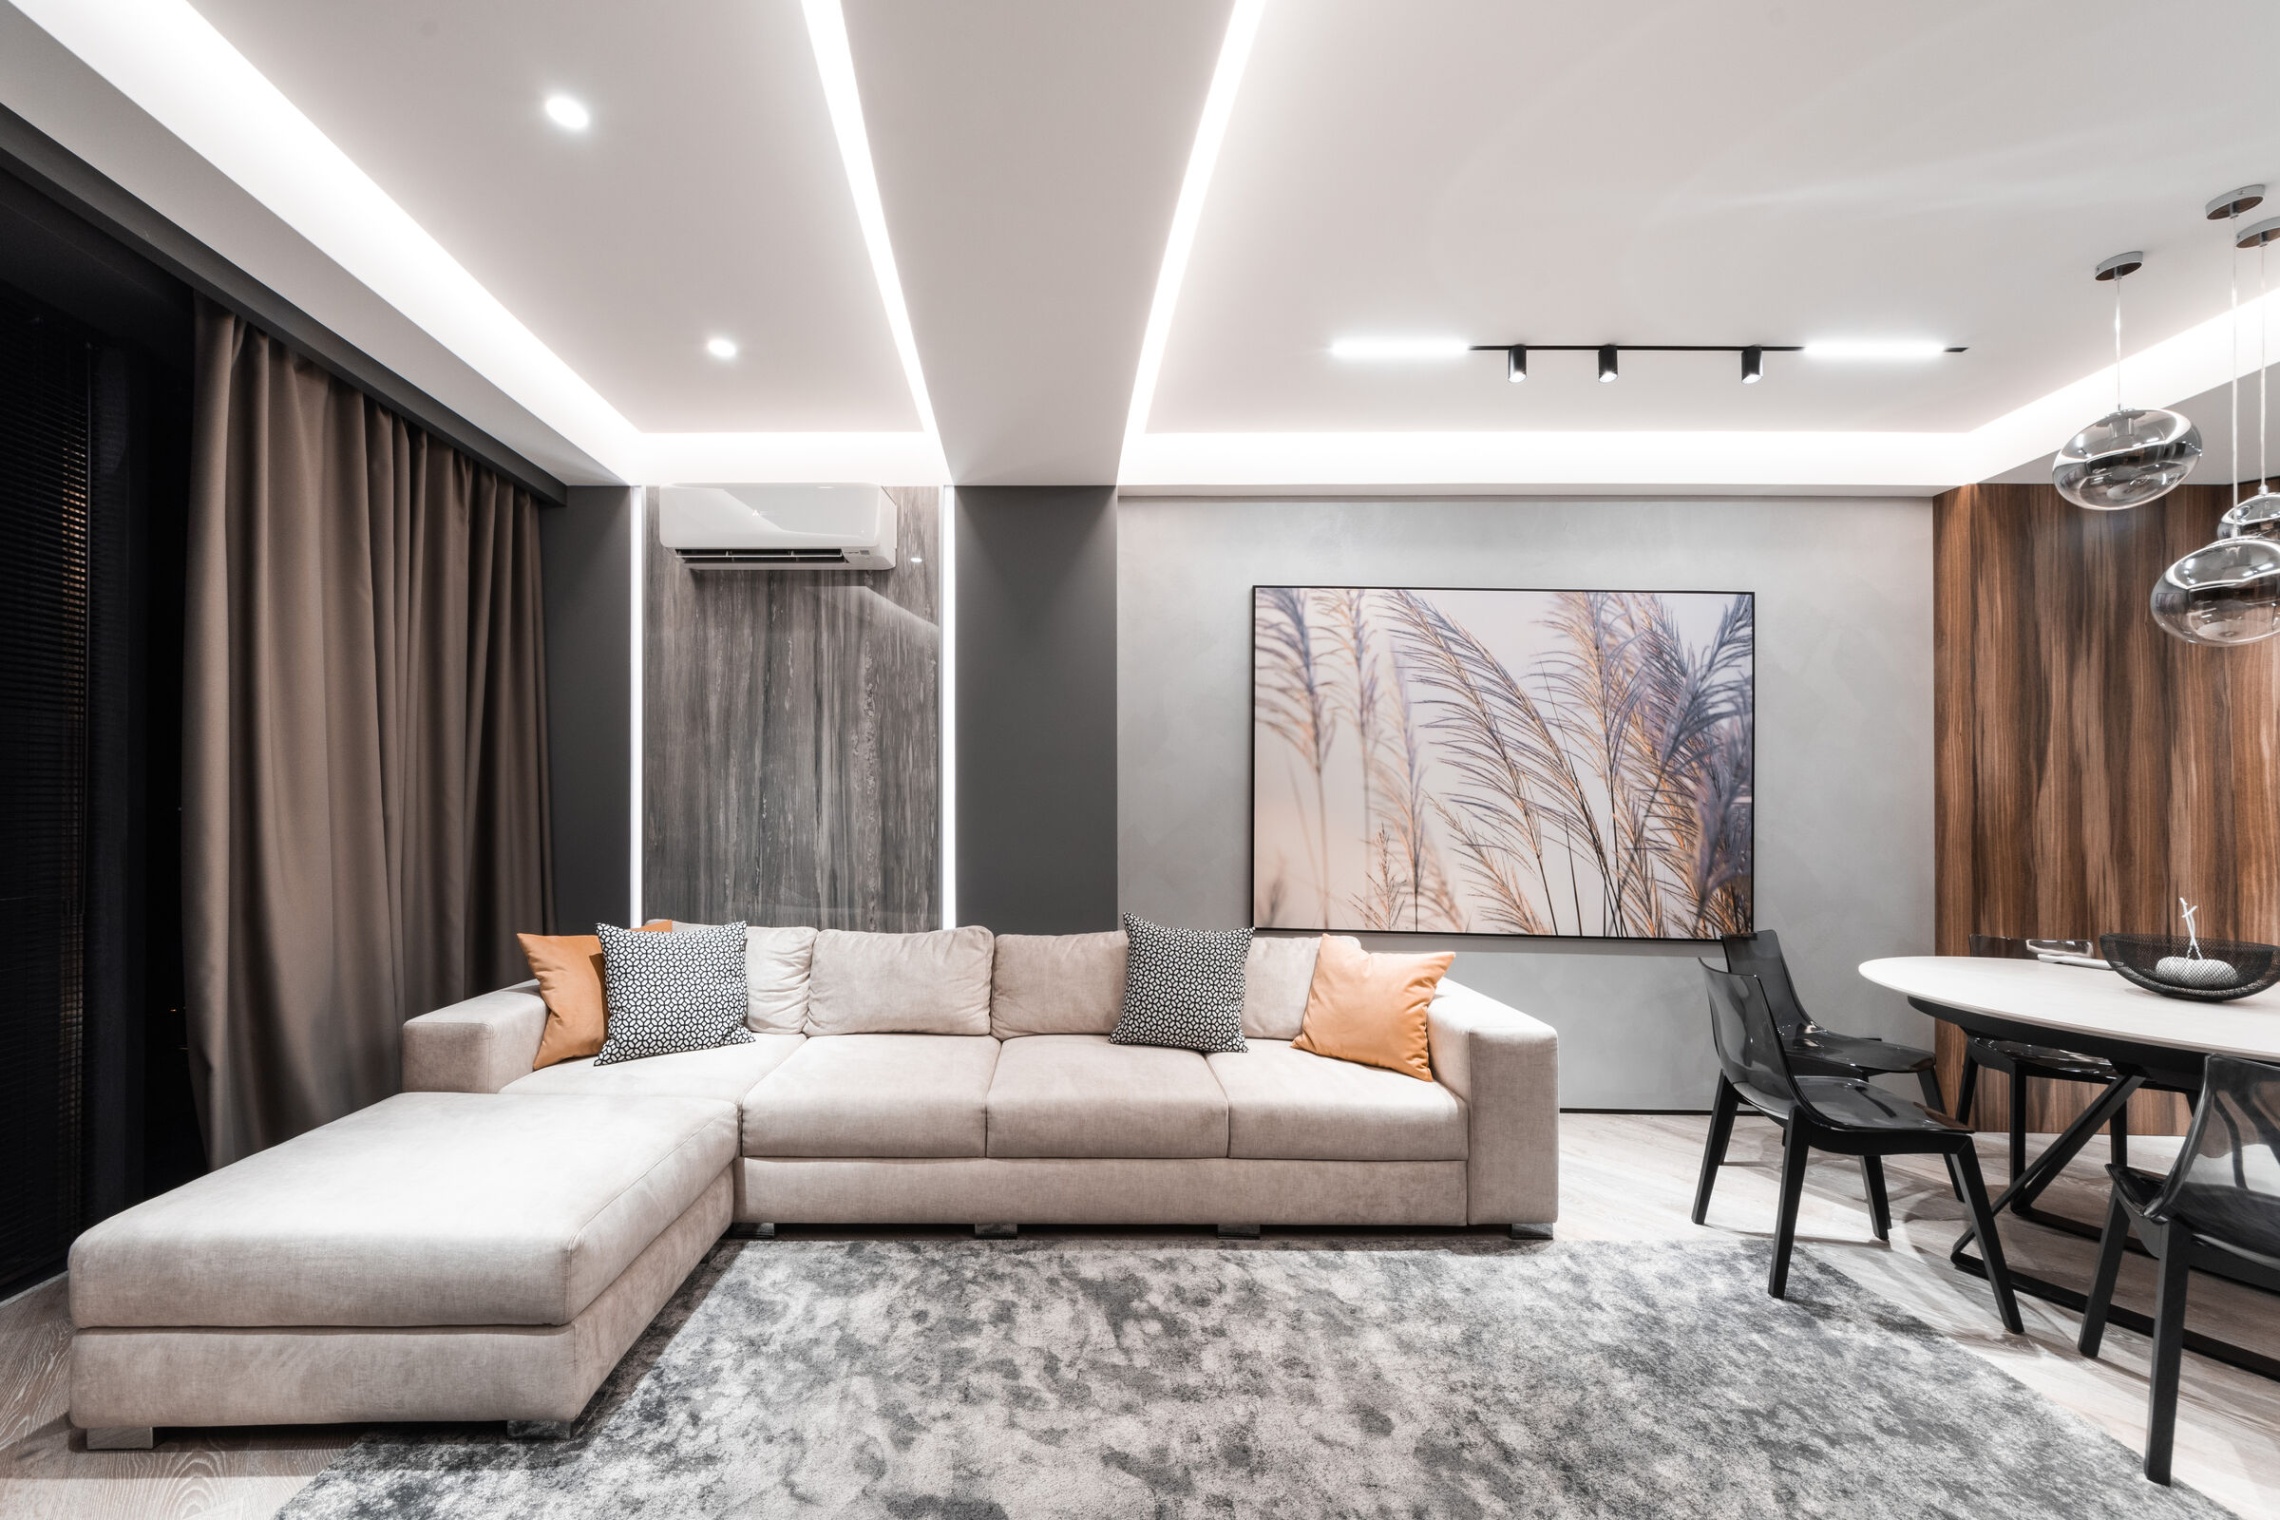 interior design apartment Niche Utama Home MIDTOWN APARTMENT: MODERN INTERIOR DESIGN  AB+Partners  Archello